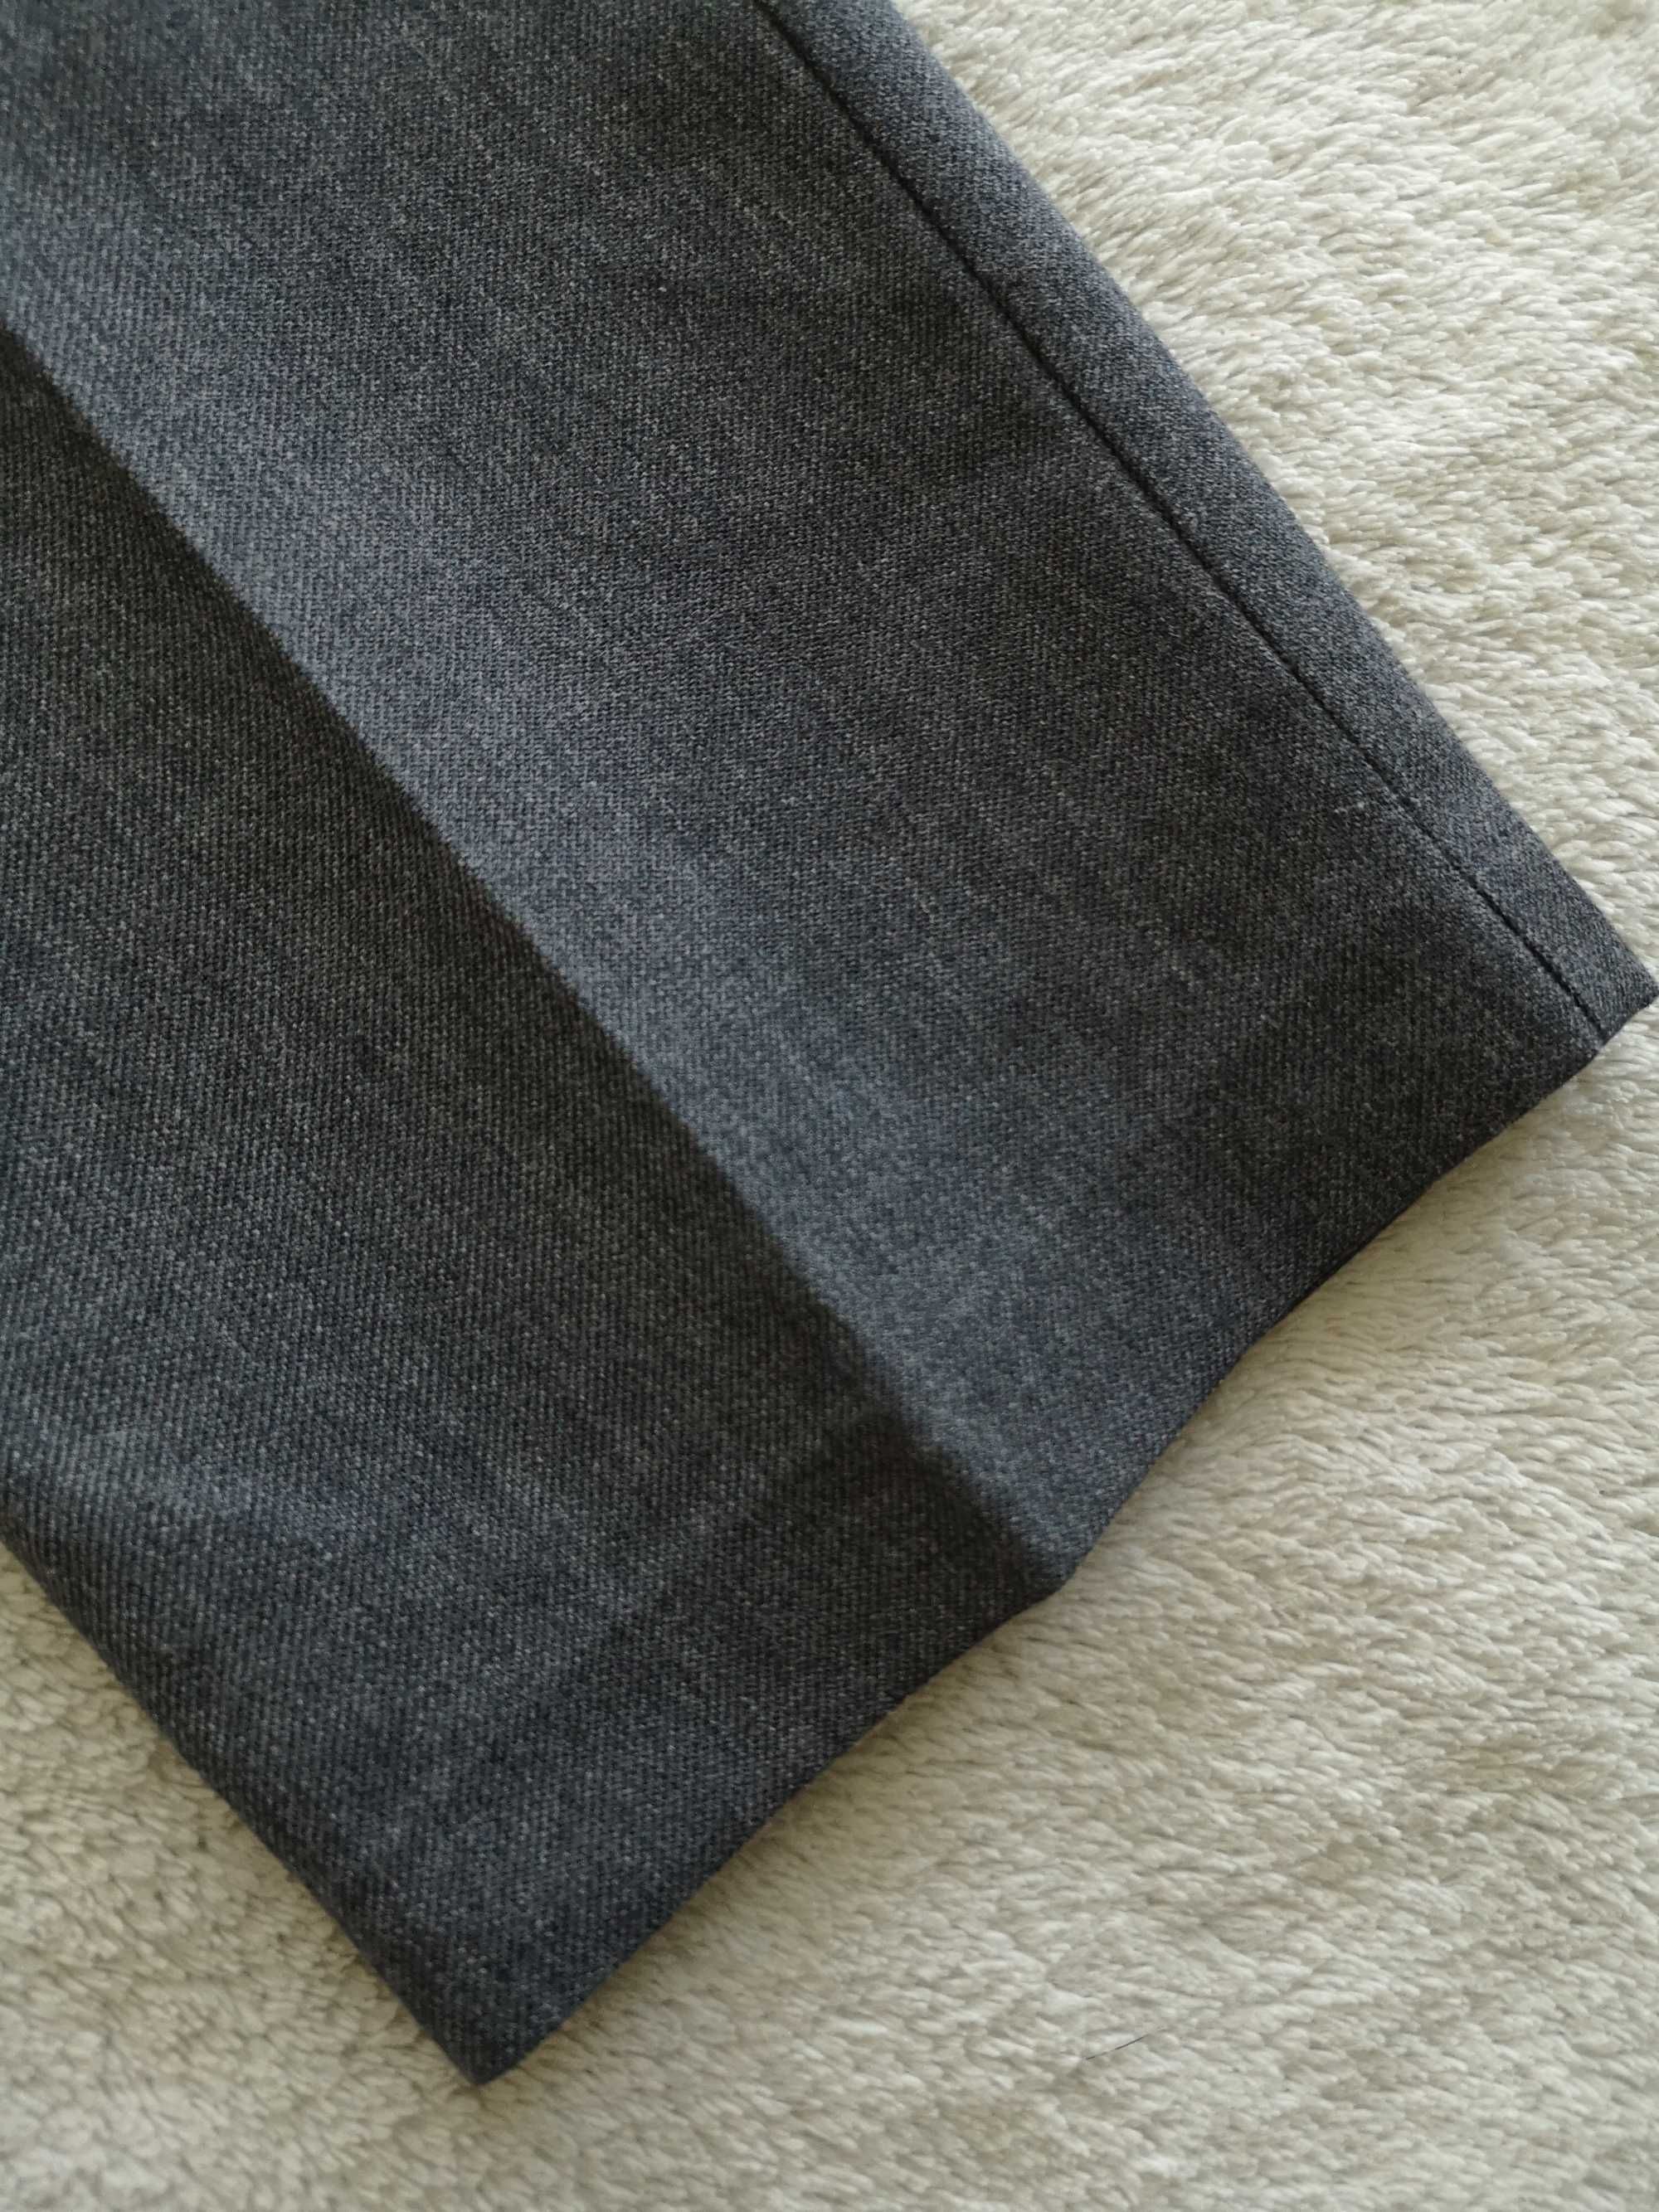 Eleganckie szare regulowane spodnie wizytowe w kant 116 - 122 j nowe